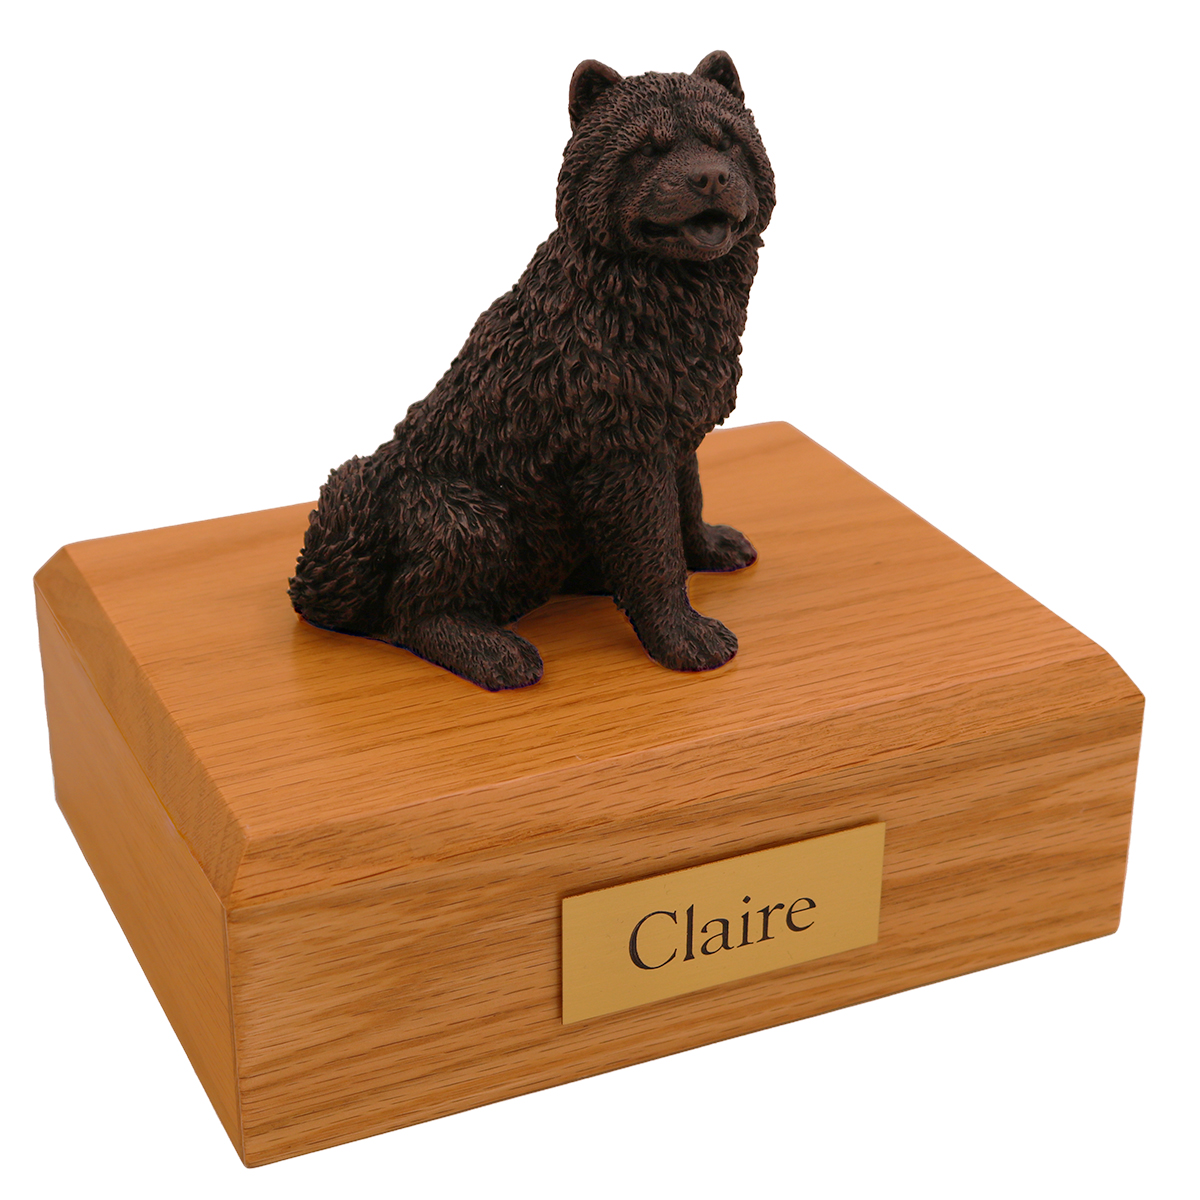 Dog, Chow Chow, Bronze - Figurine Urn